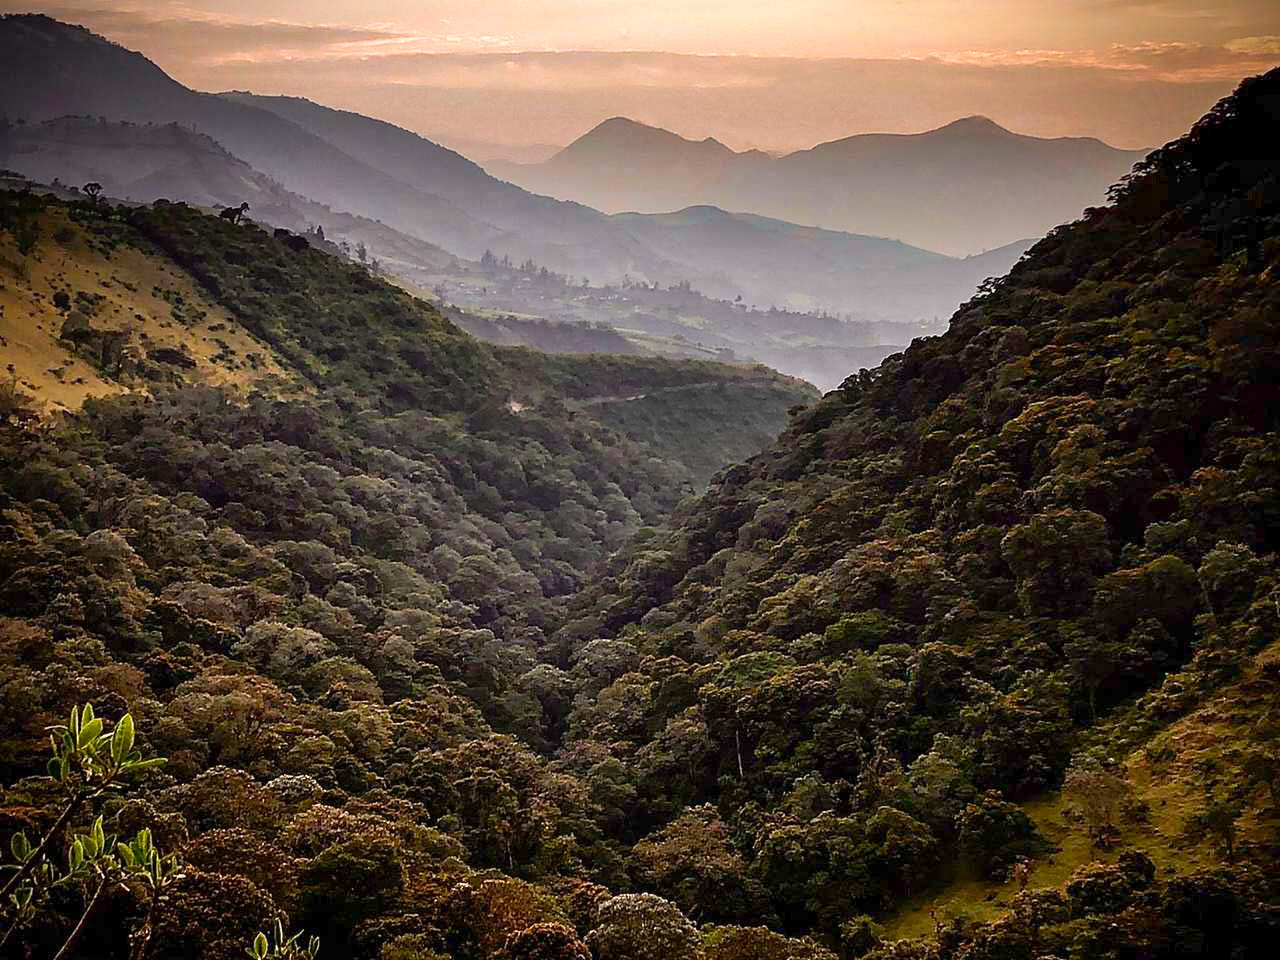 The forest of Abrazo del Bosque at dawn